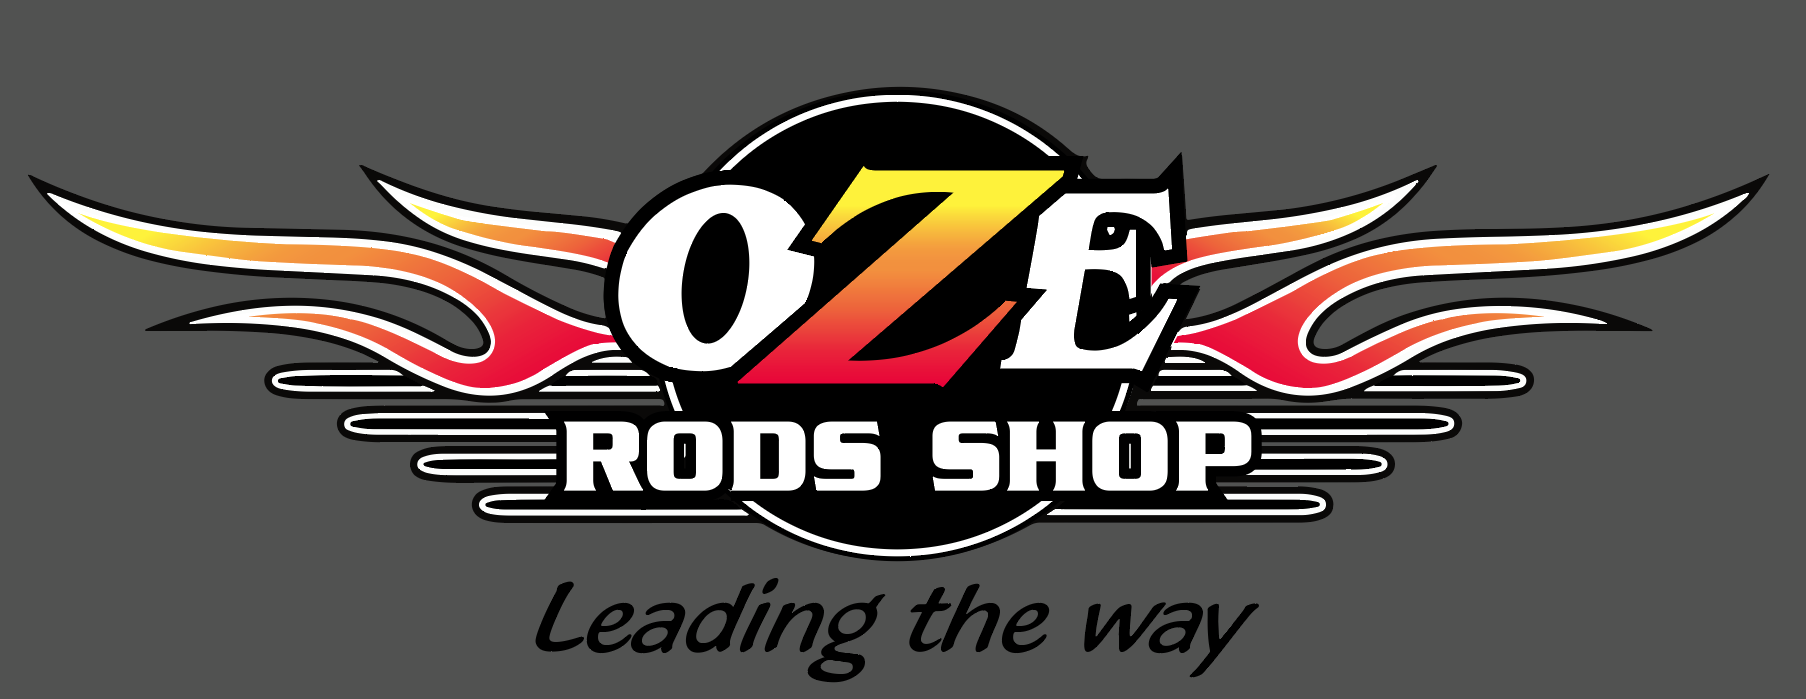 OZE Rods Shop